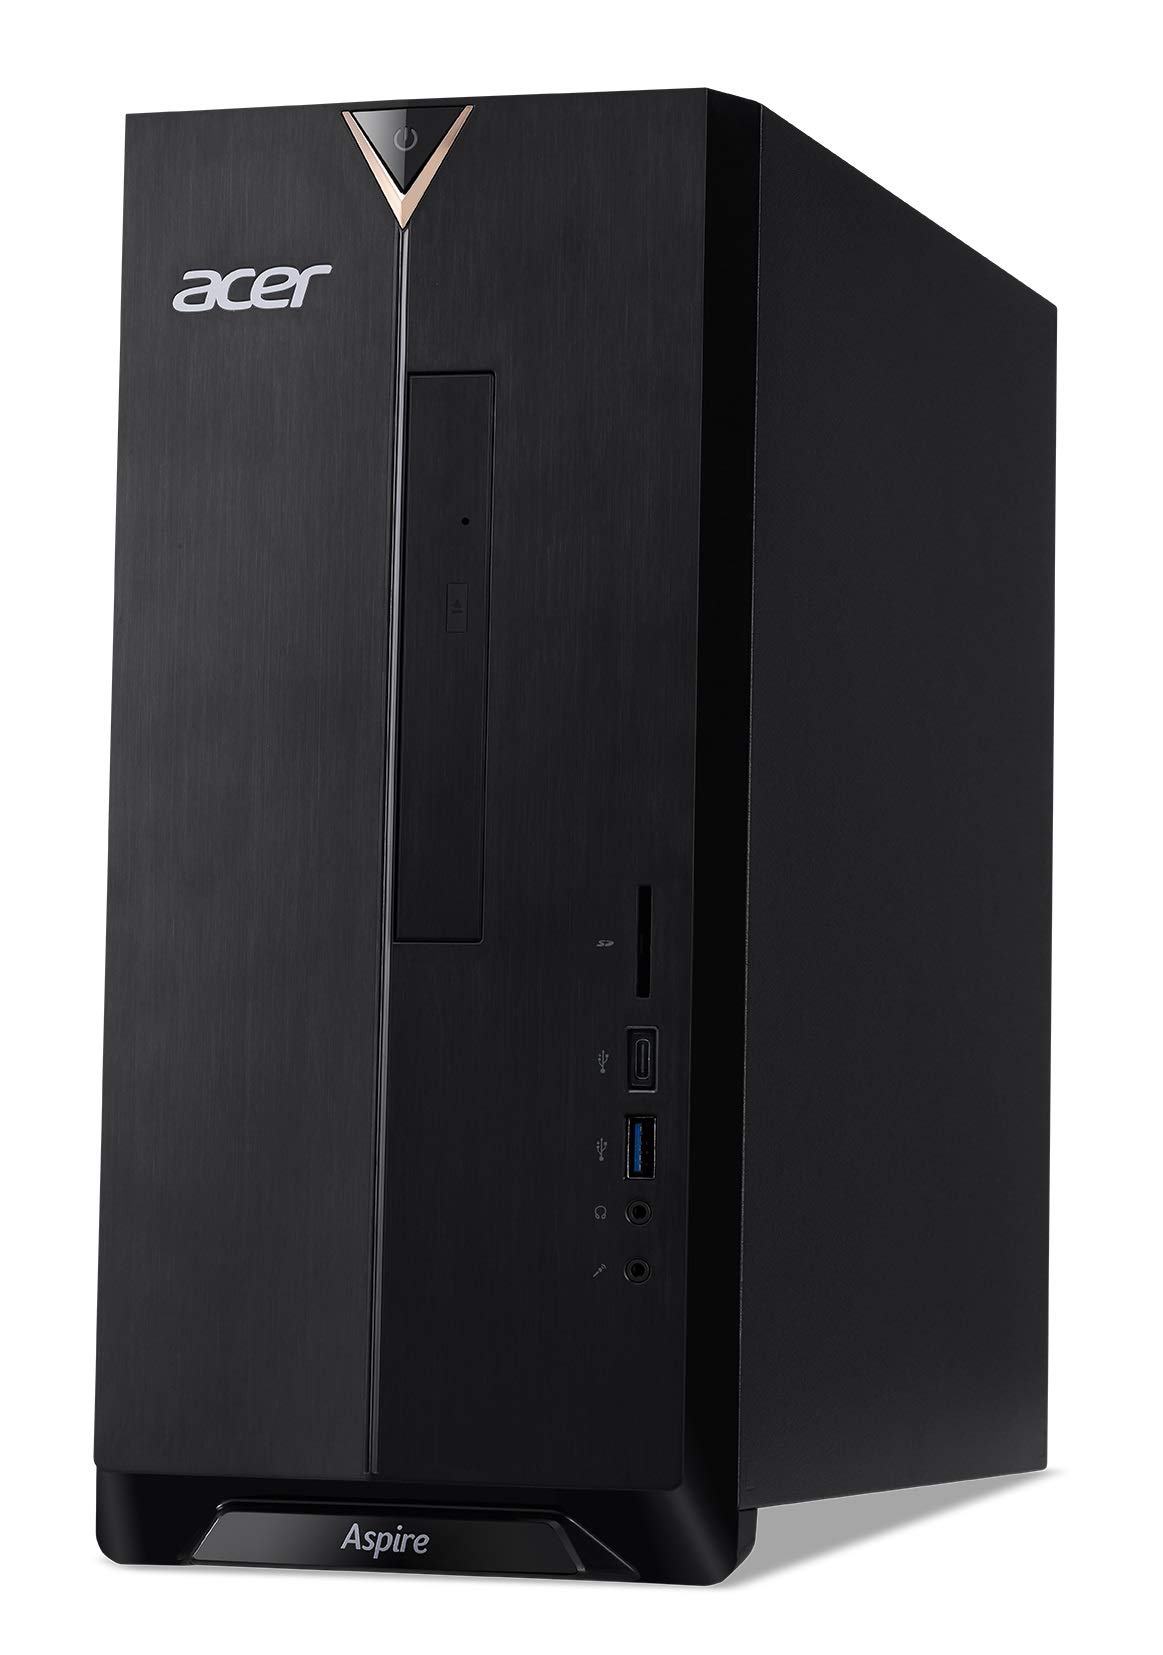 Acer Aspire TC-895-UR11 Desktop, 10th Gen Intel Core i5-10400 6-Core Processor, 12GB 2666MHz DDR4, 512GB NVMe M.2 SSD, 8X DVD, 802.11ax WiFi 6, USB 3.2 Type C, Windows 10 Professional